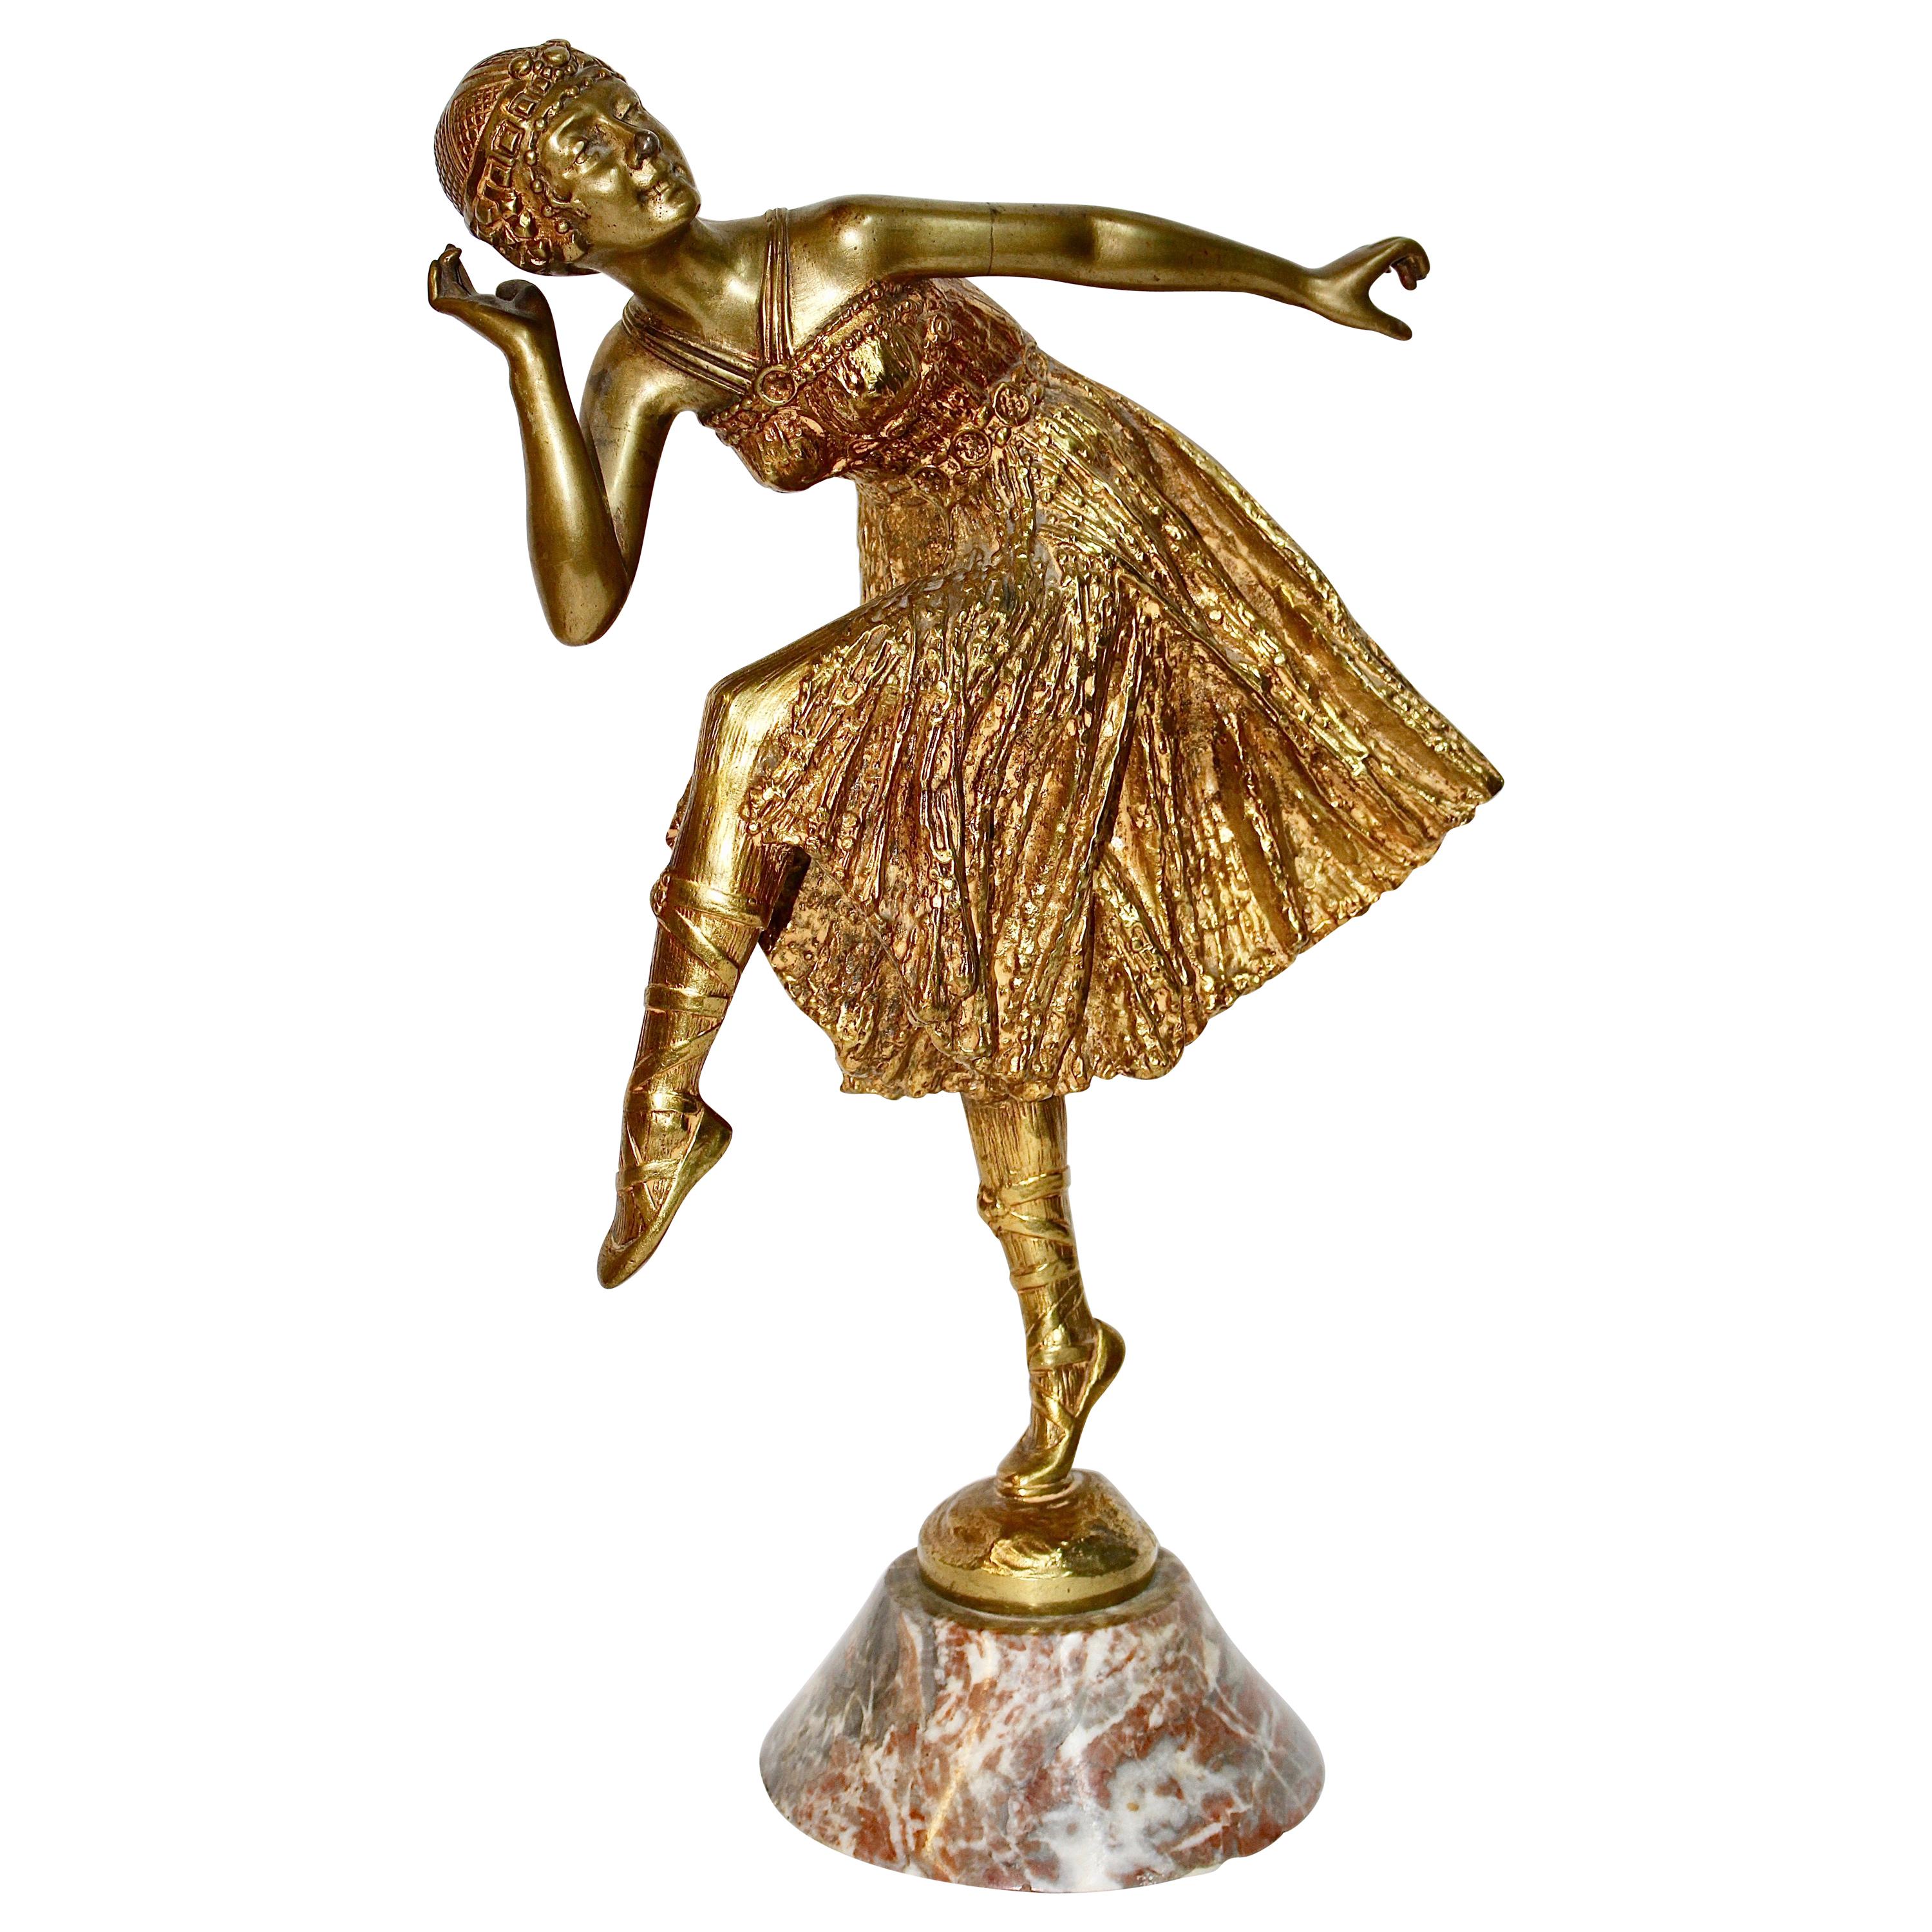 Antique Fire-Gilded Bronze Sculpture, Art Deco, Nouveau Dancing Lady "Bousquet"